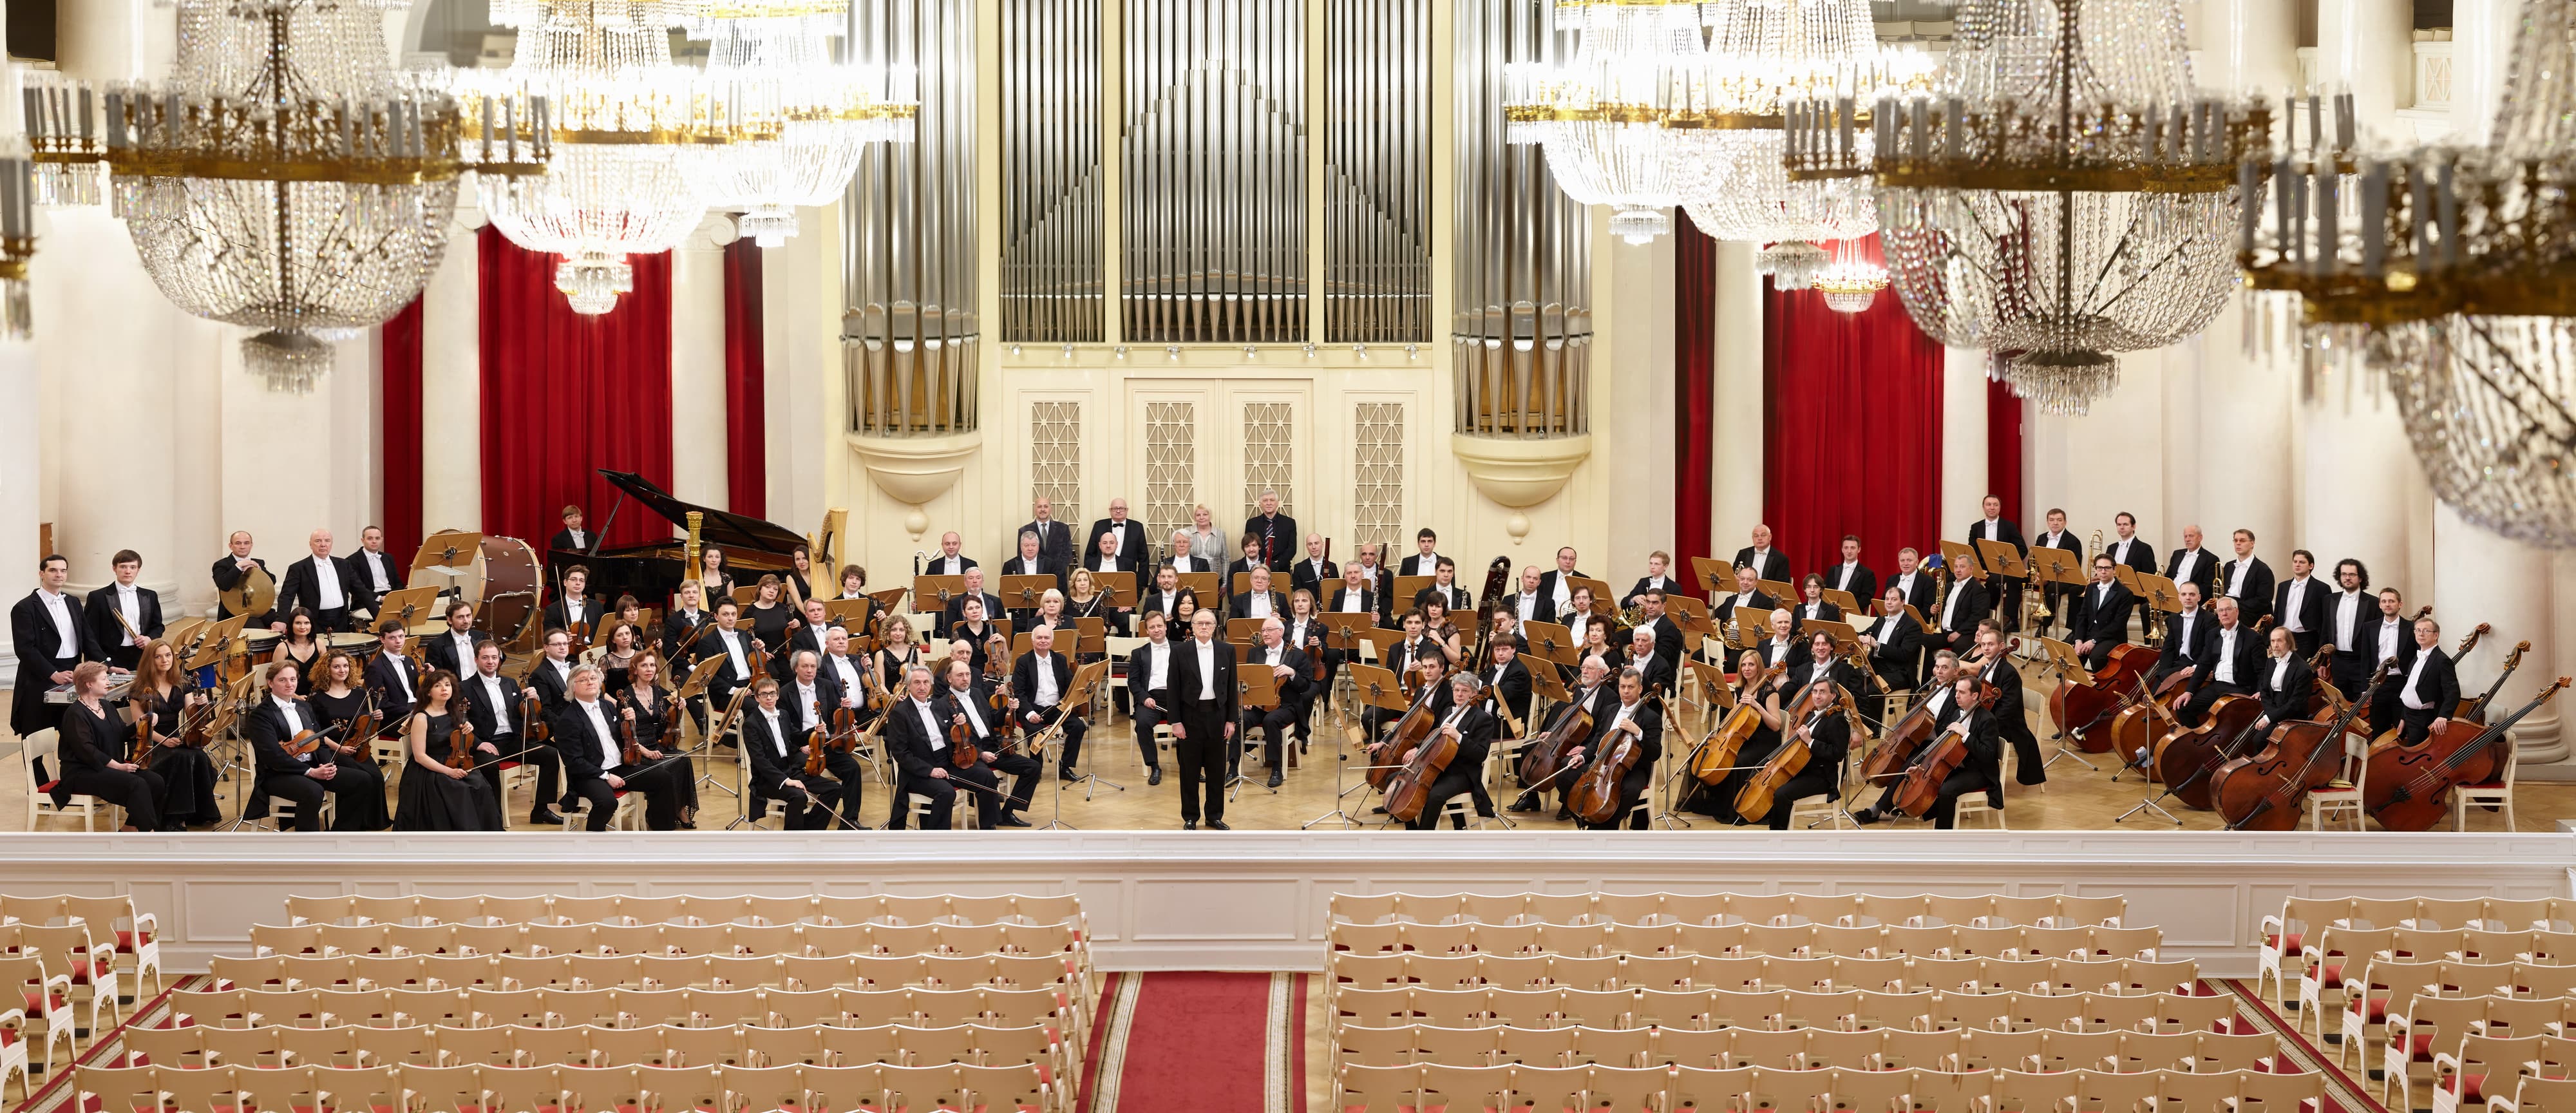 Академический симфонический оркестр Санкт-Петербургской филармонии